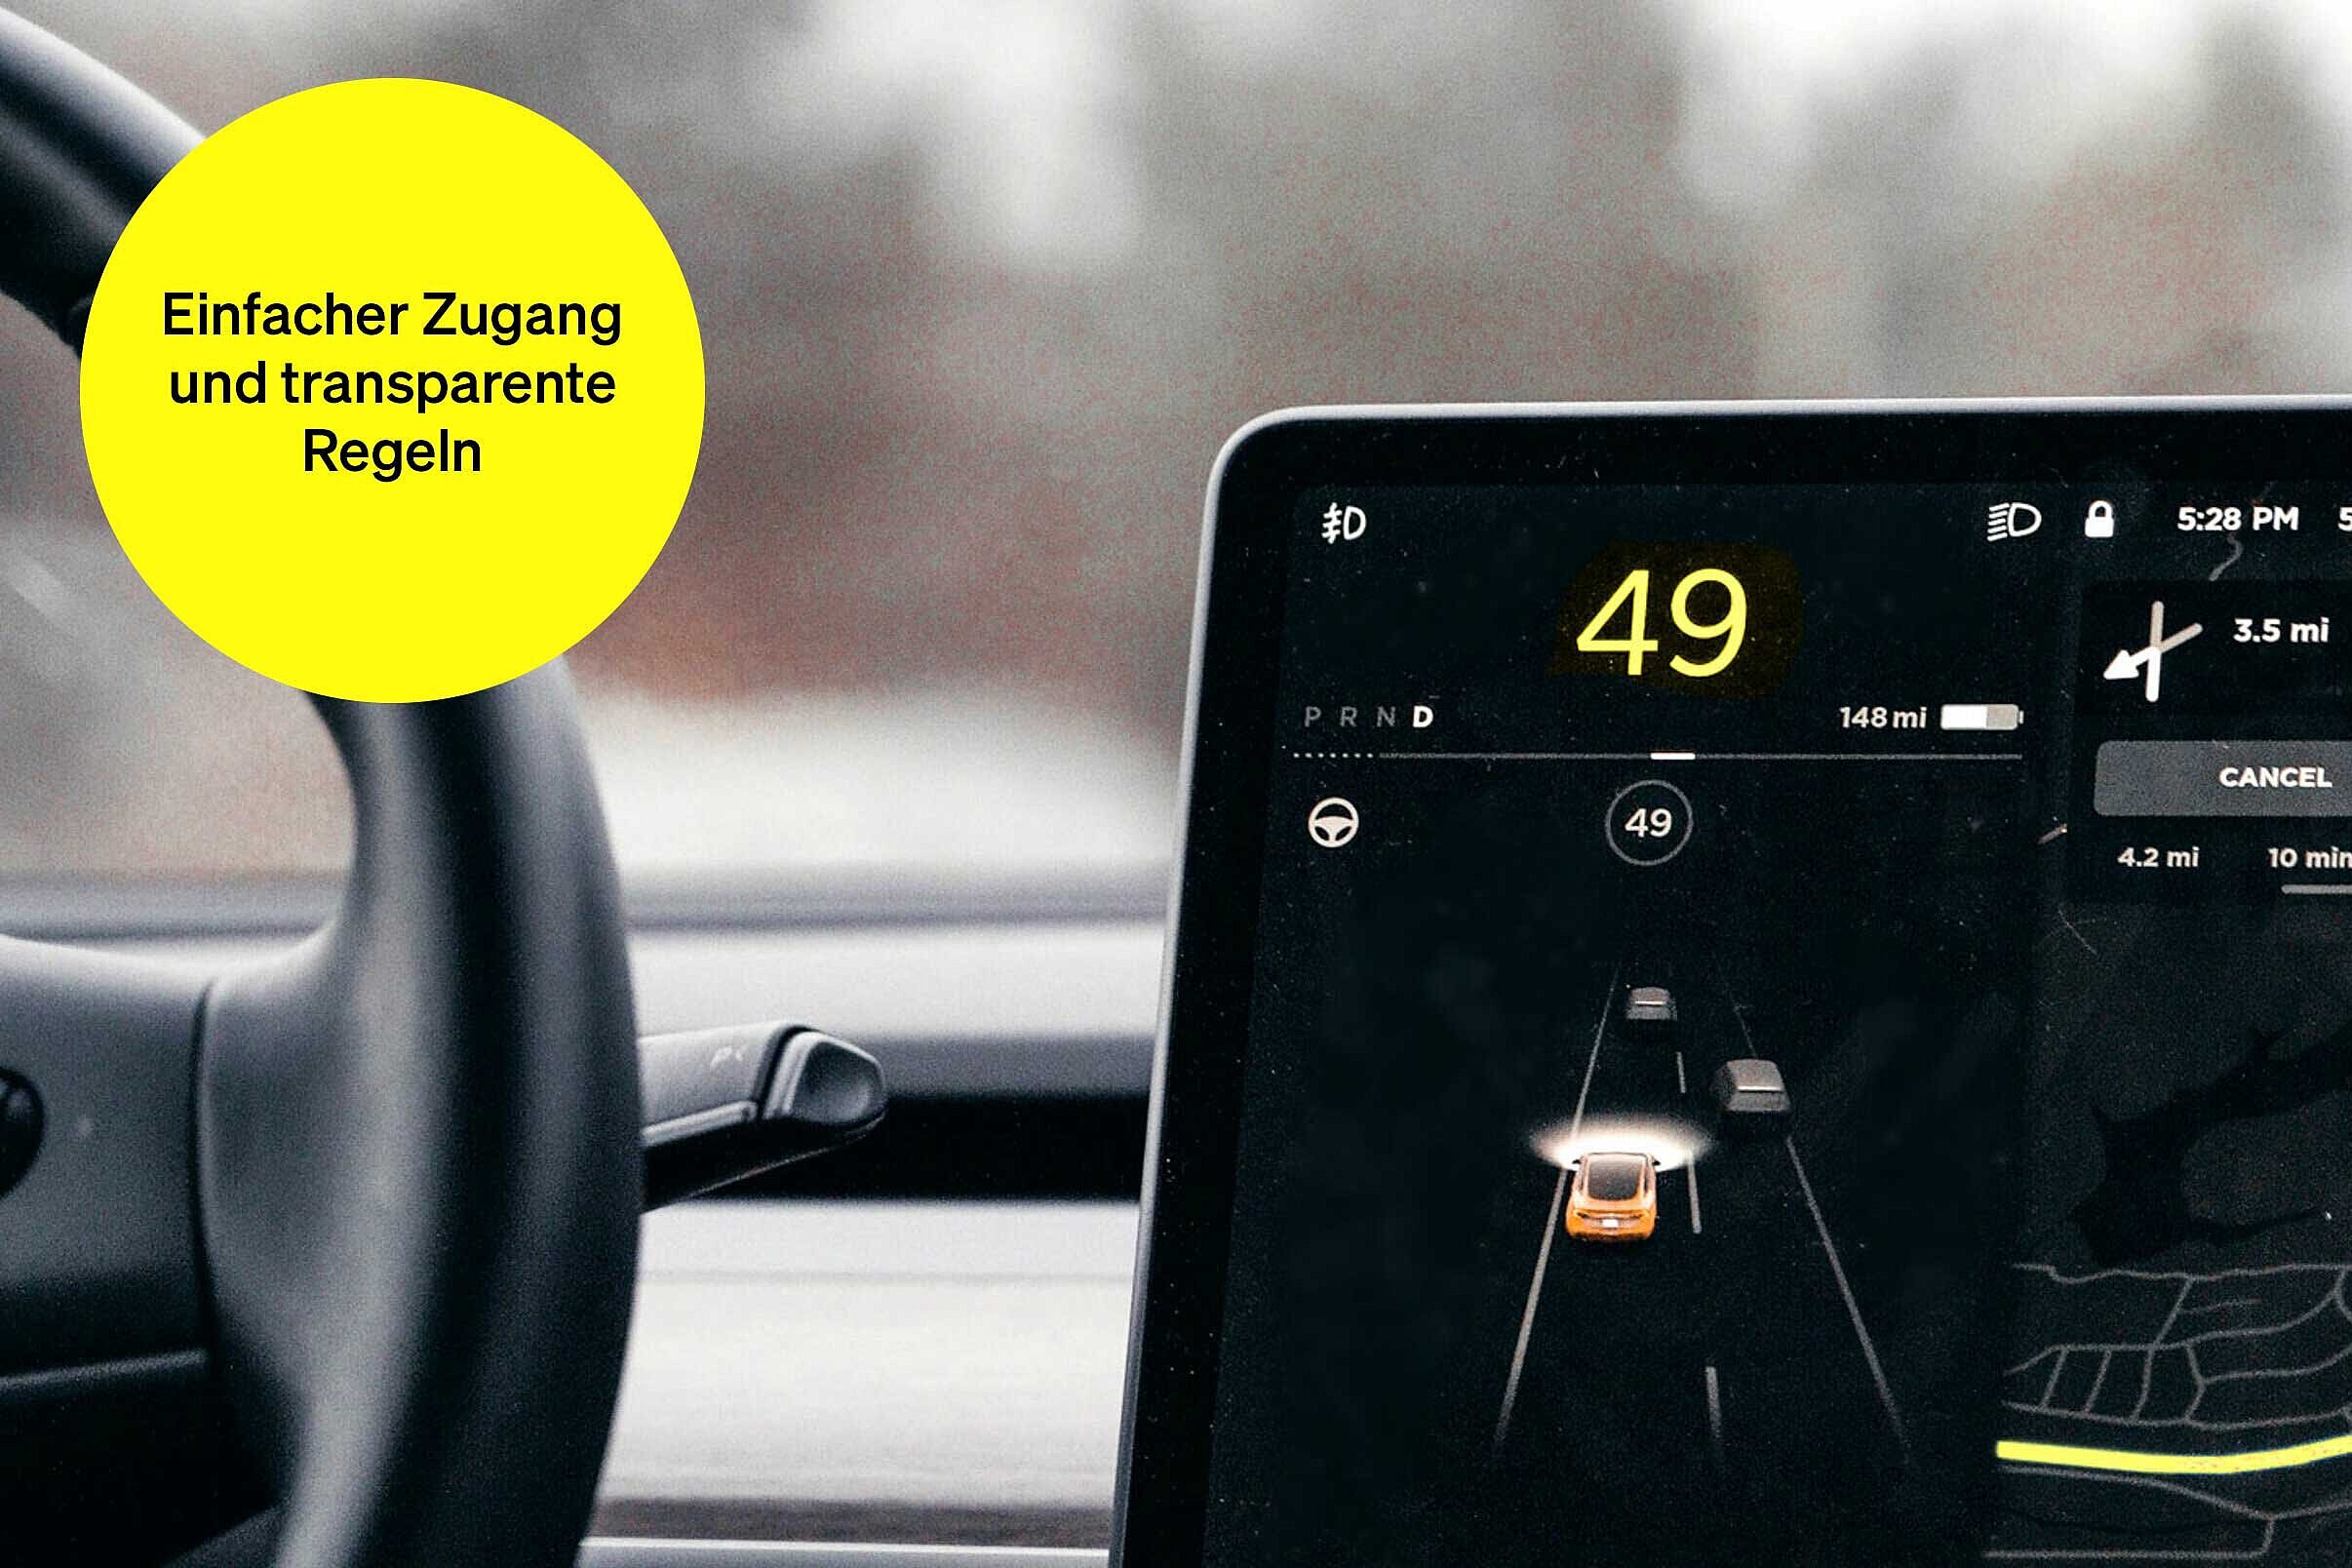 Navigationssystem im Auto – Textbaustein in runder Kachel: Einfacher Zugang und transparente Regeln